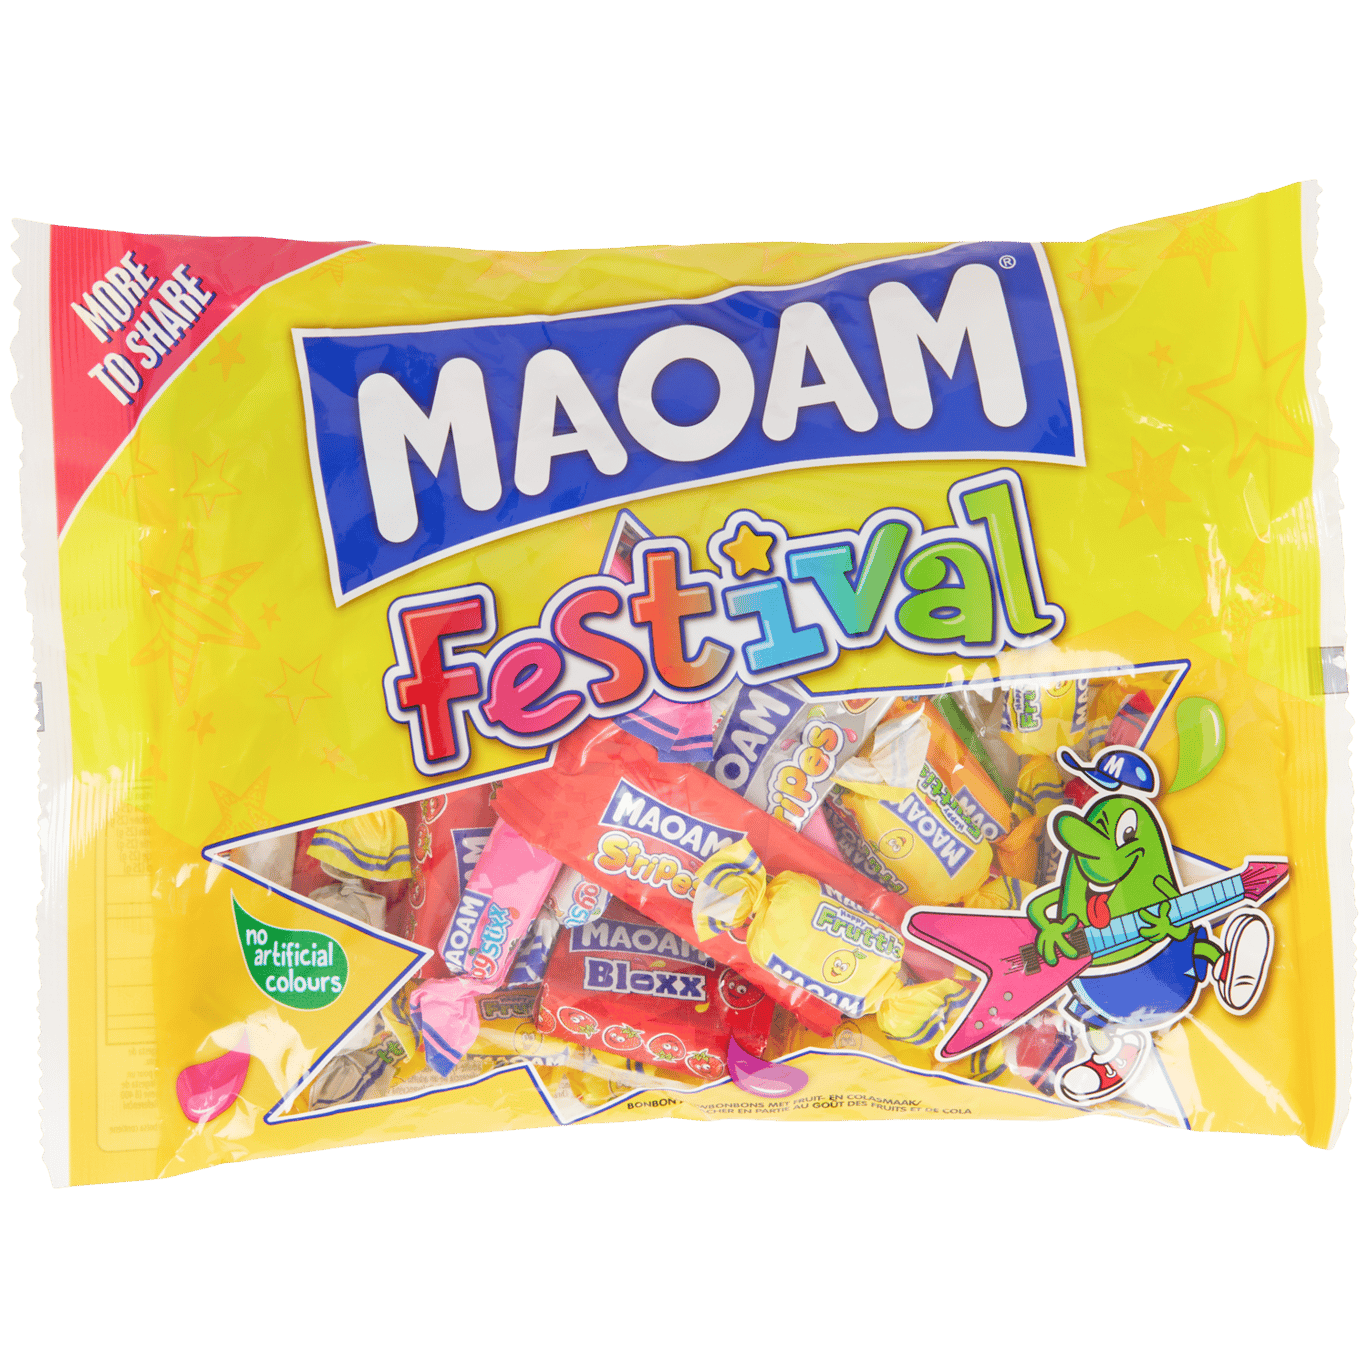 MAOAM : le nouveau bonbon qui vient secouer vos papilles !